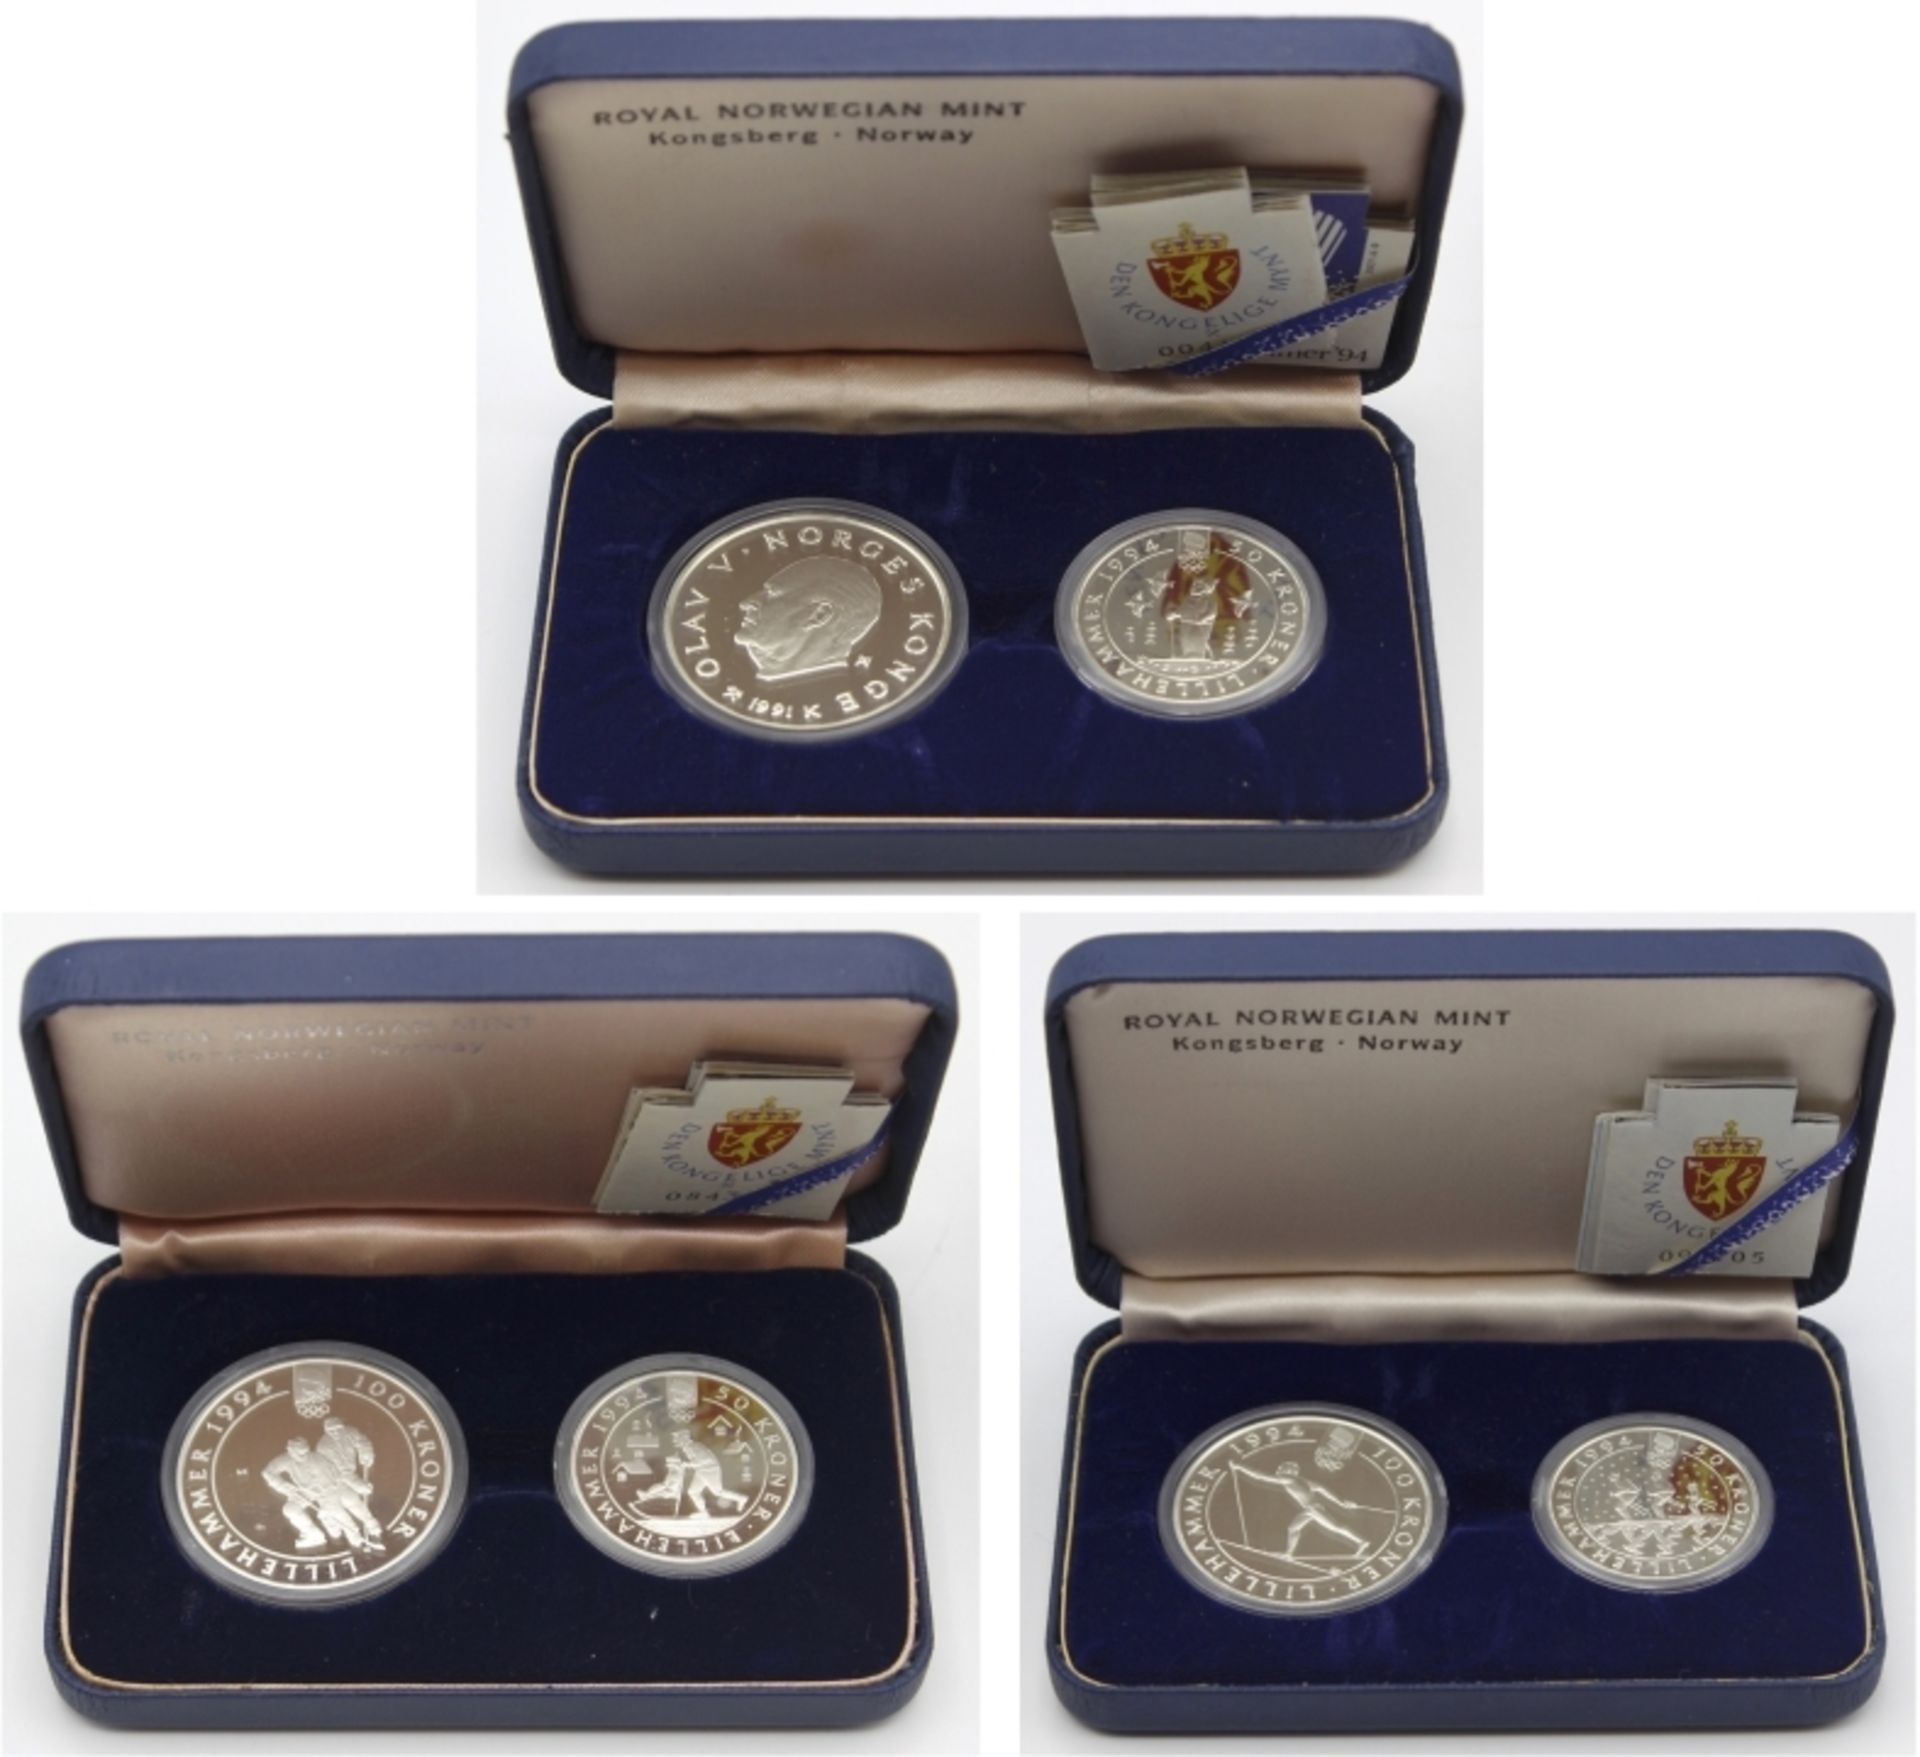 Lot Münzen 1. Olav von Norges Konge, Eislaufen, PP, 100 Kronen, Lillehammer 94, 1 Unze Silber und 50